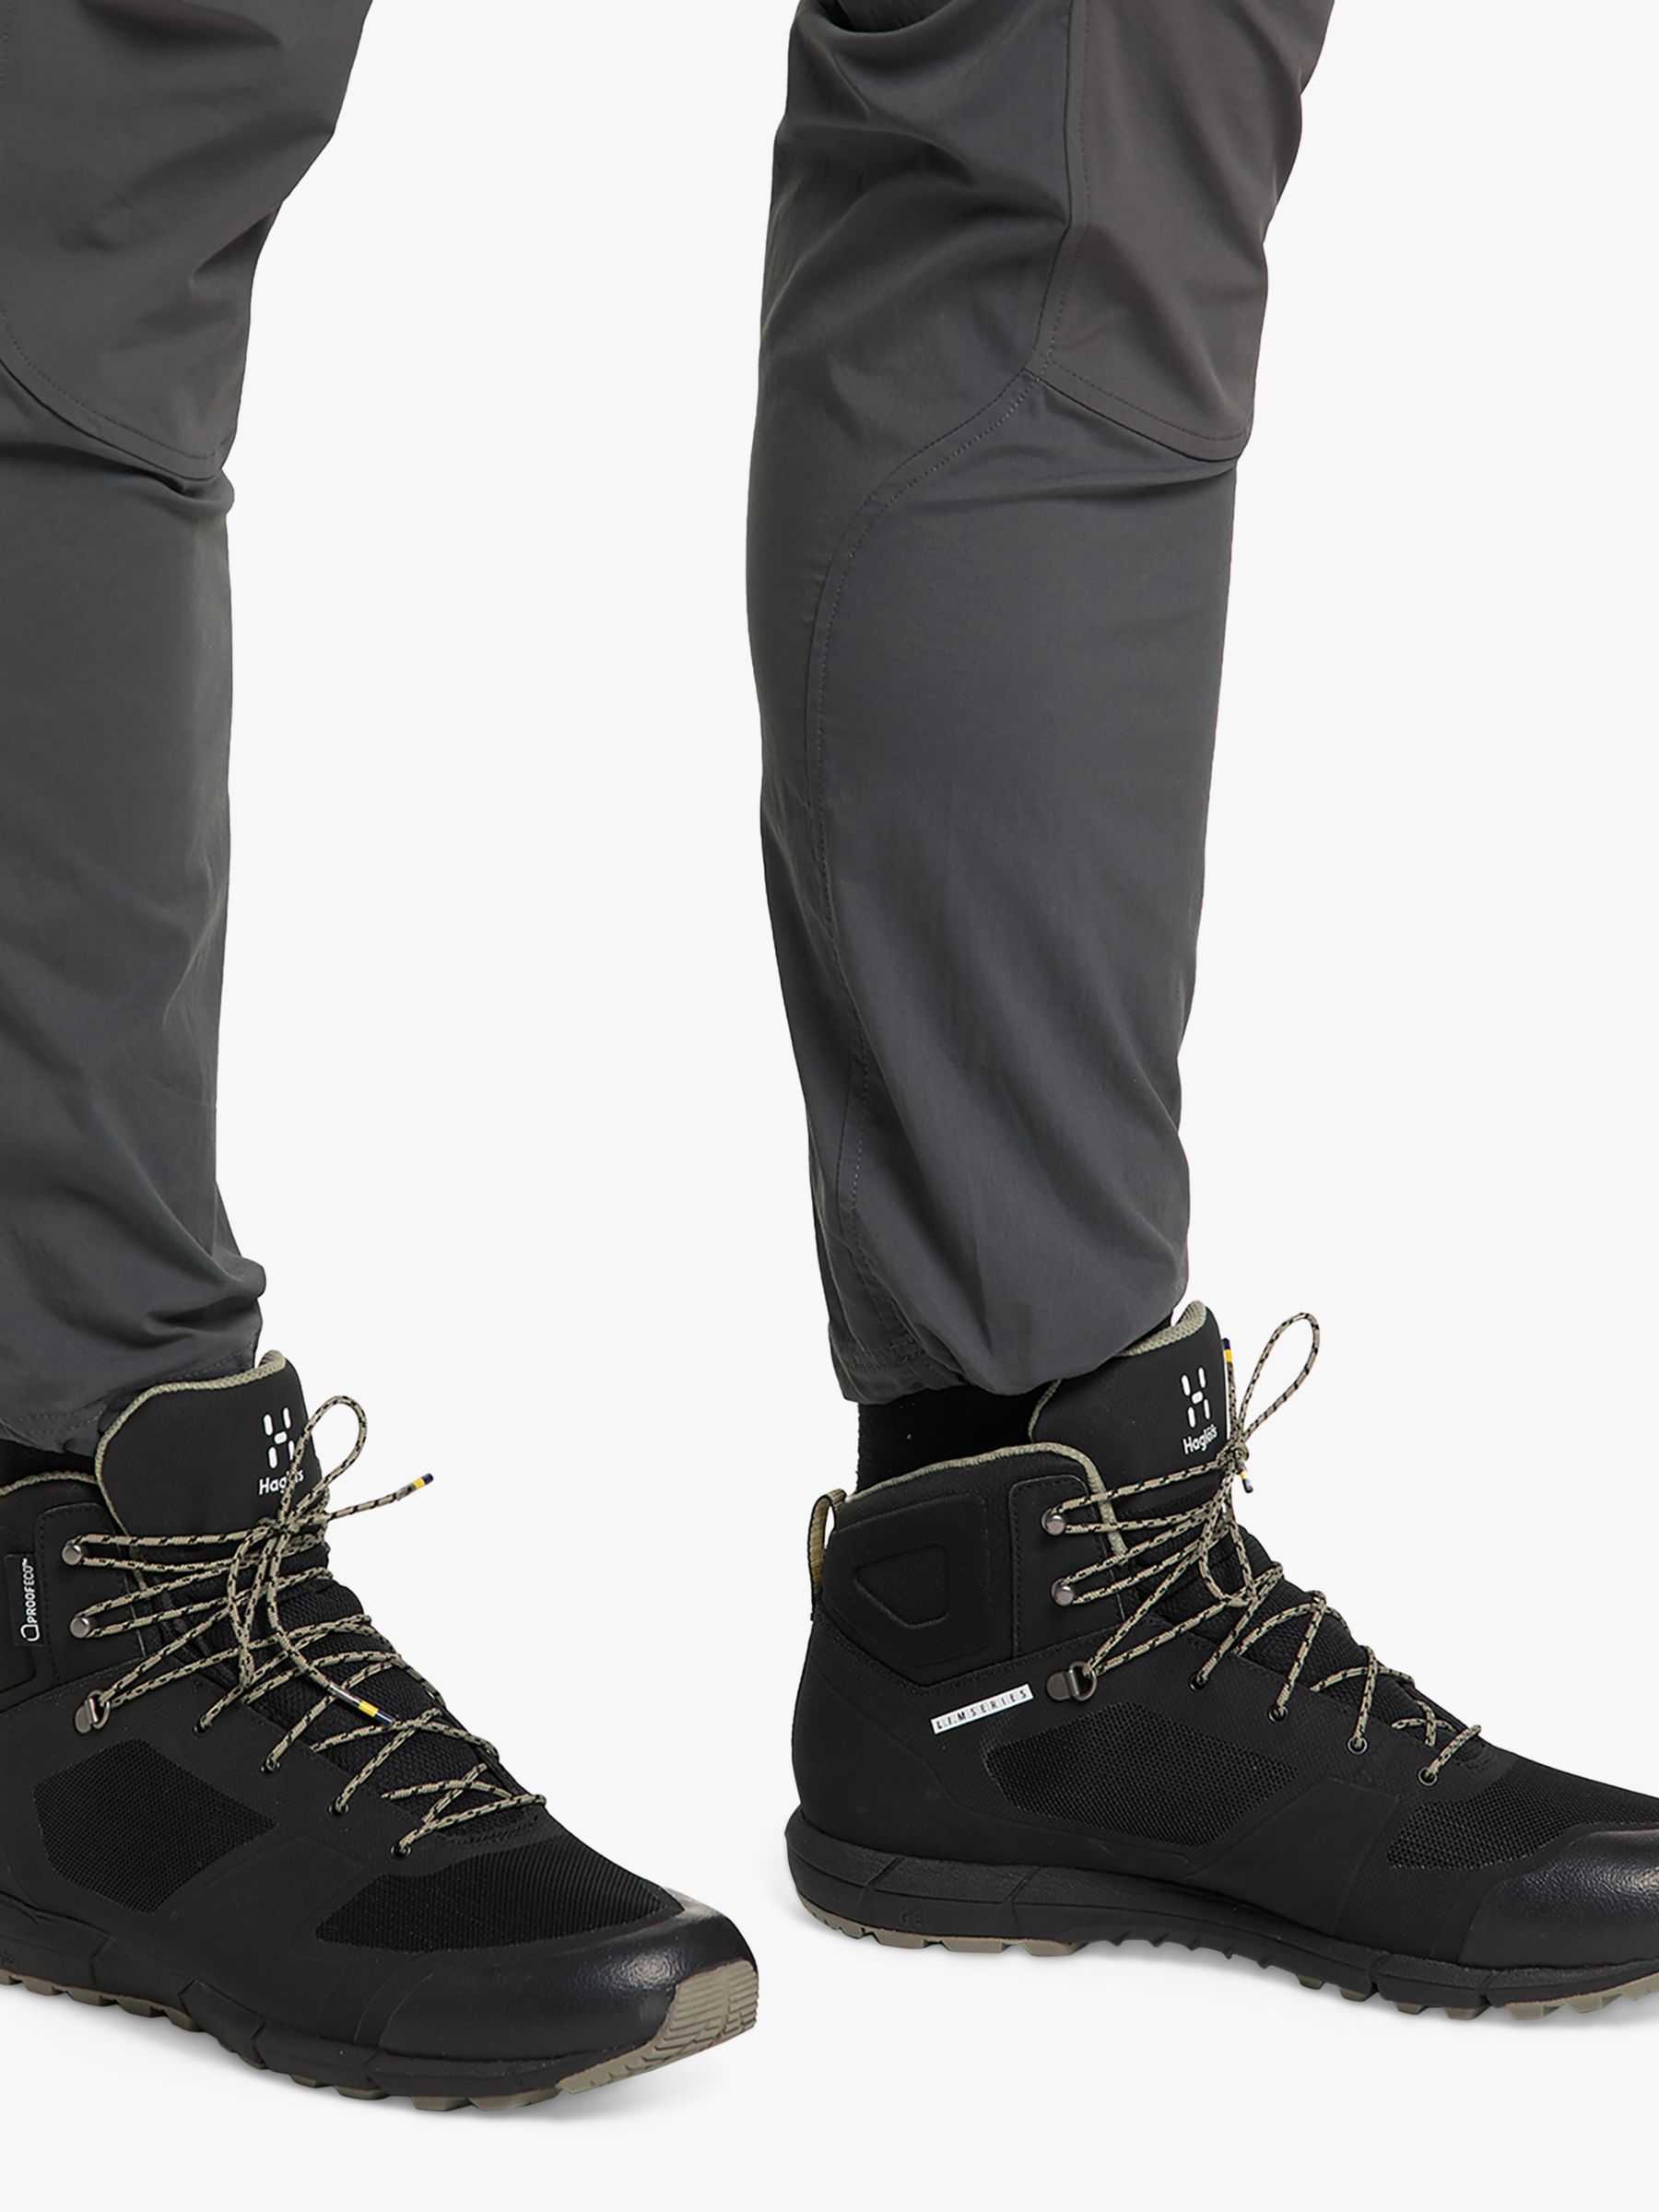 Haglöfs L.I.M. Proof Men's Waterproof Walking Boots, True Black